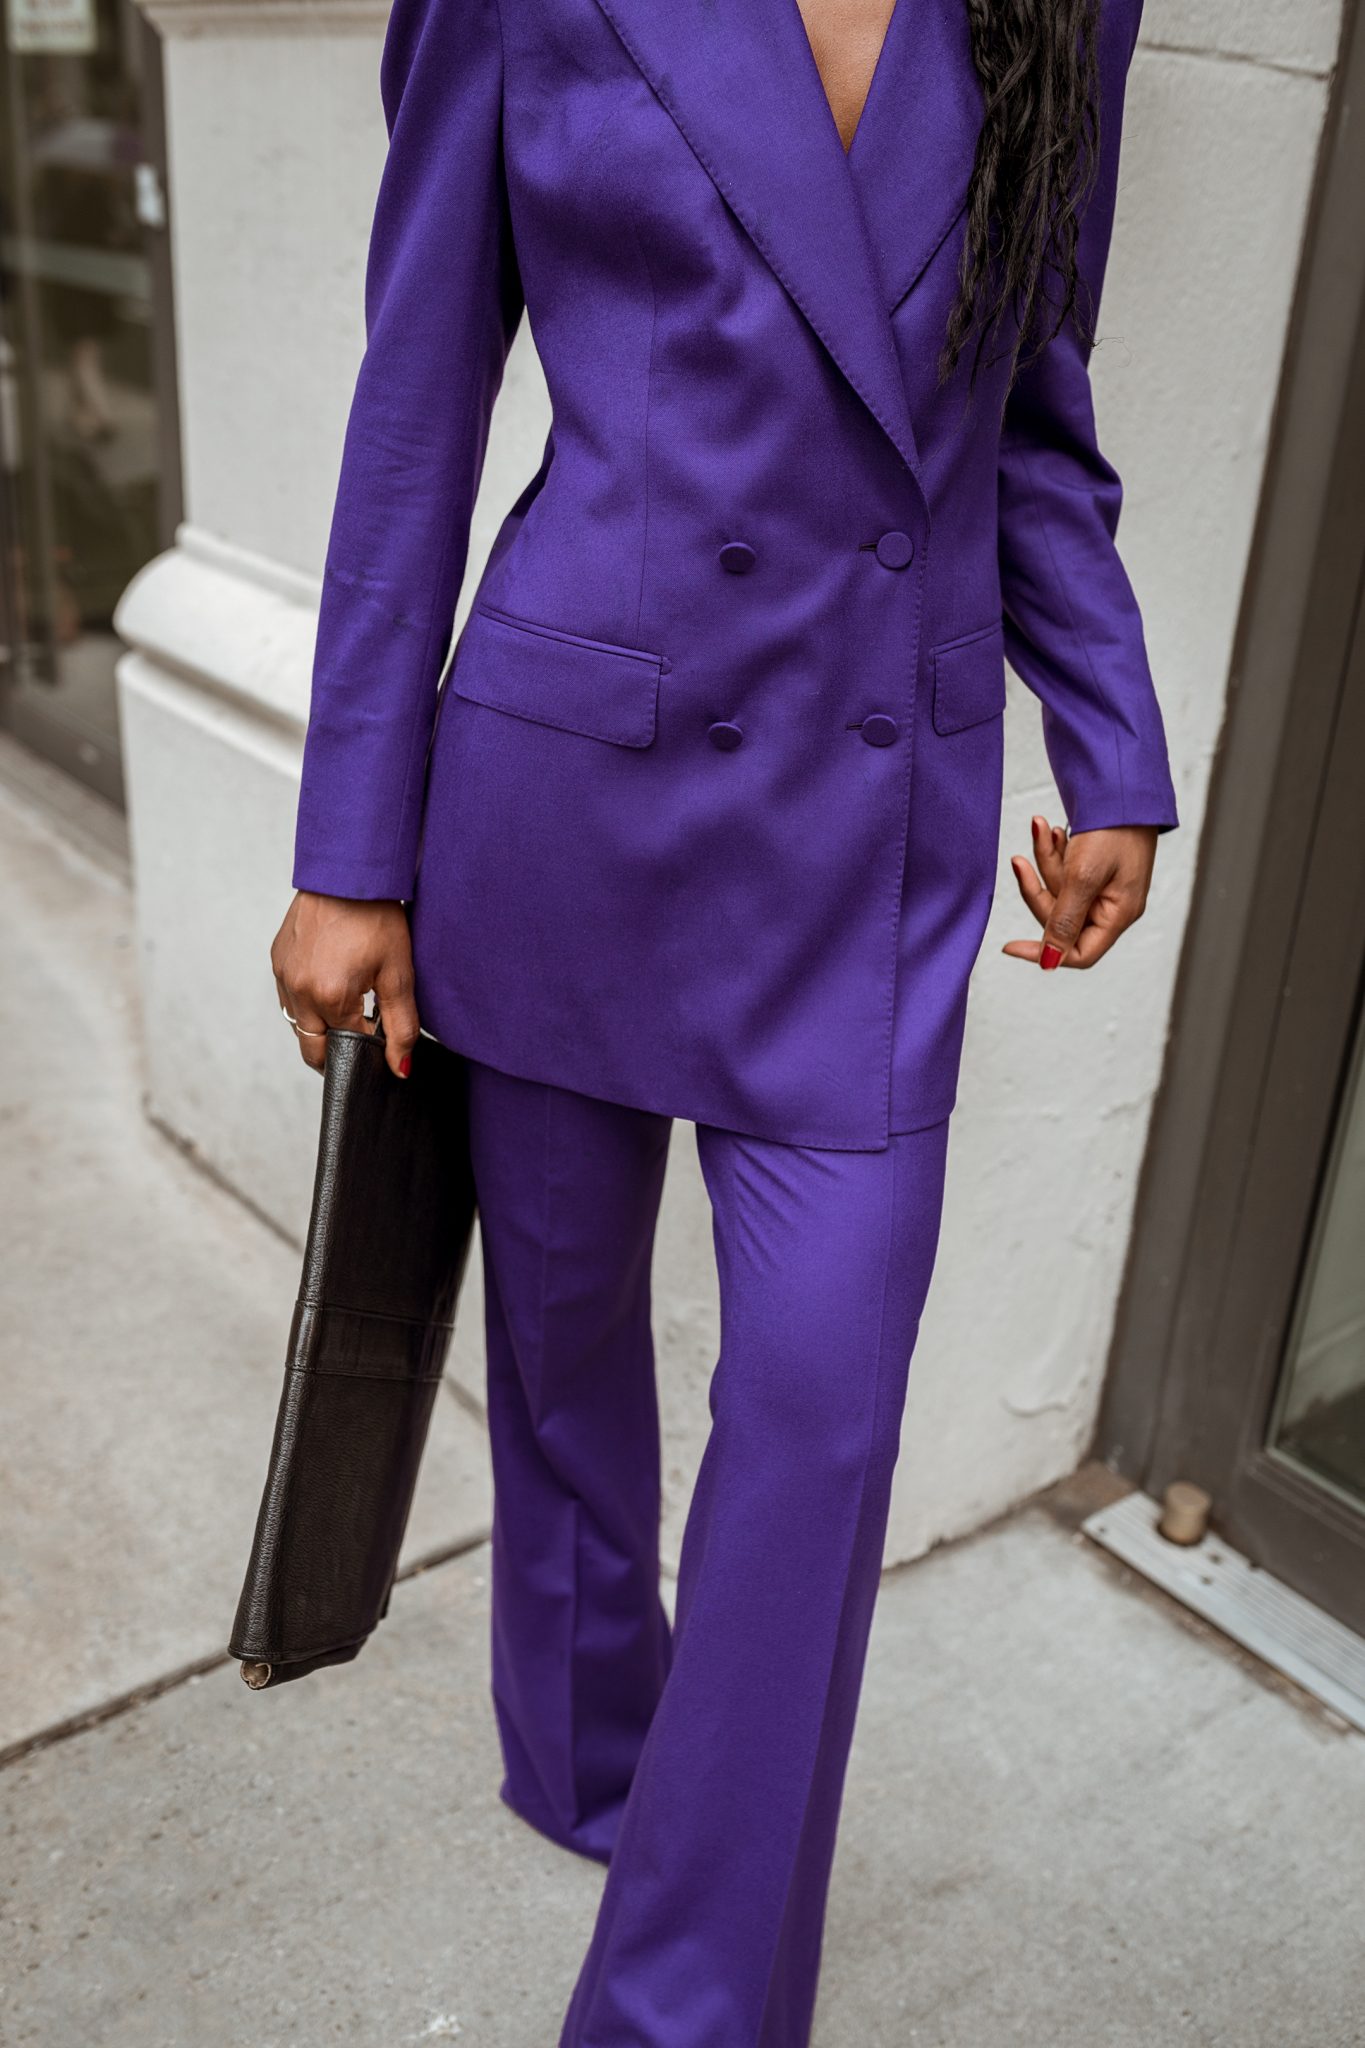 Making a Statement in a Purple Pantsuit - OpalbyOpal